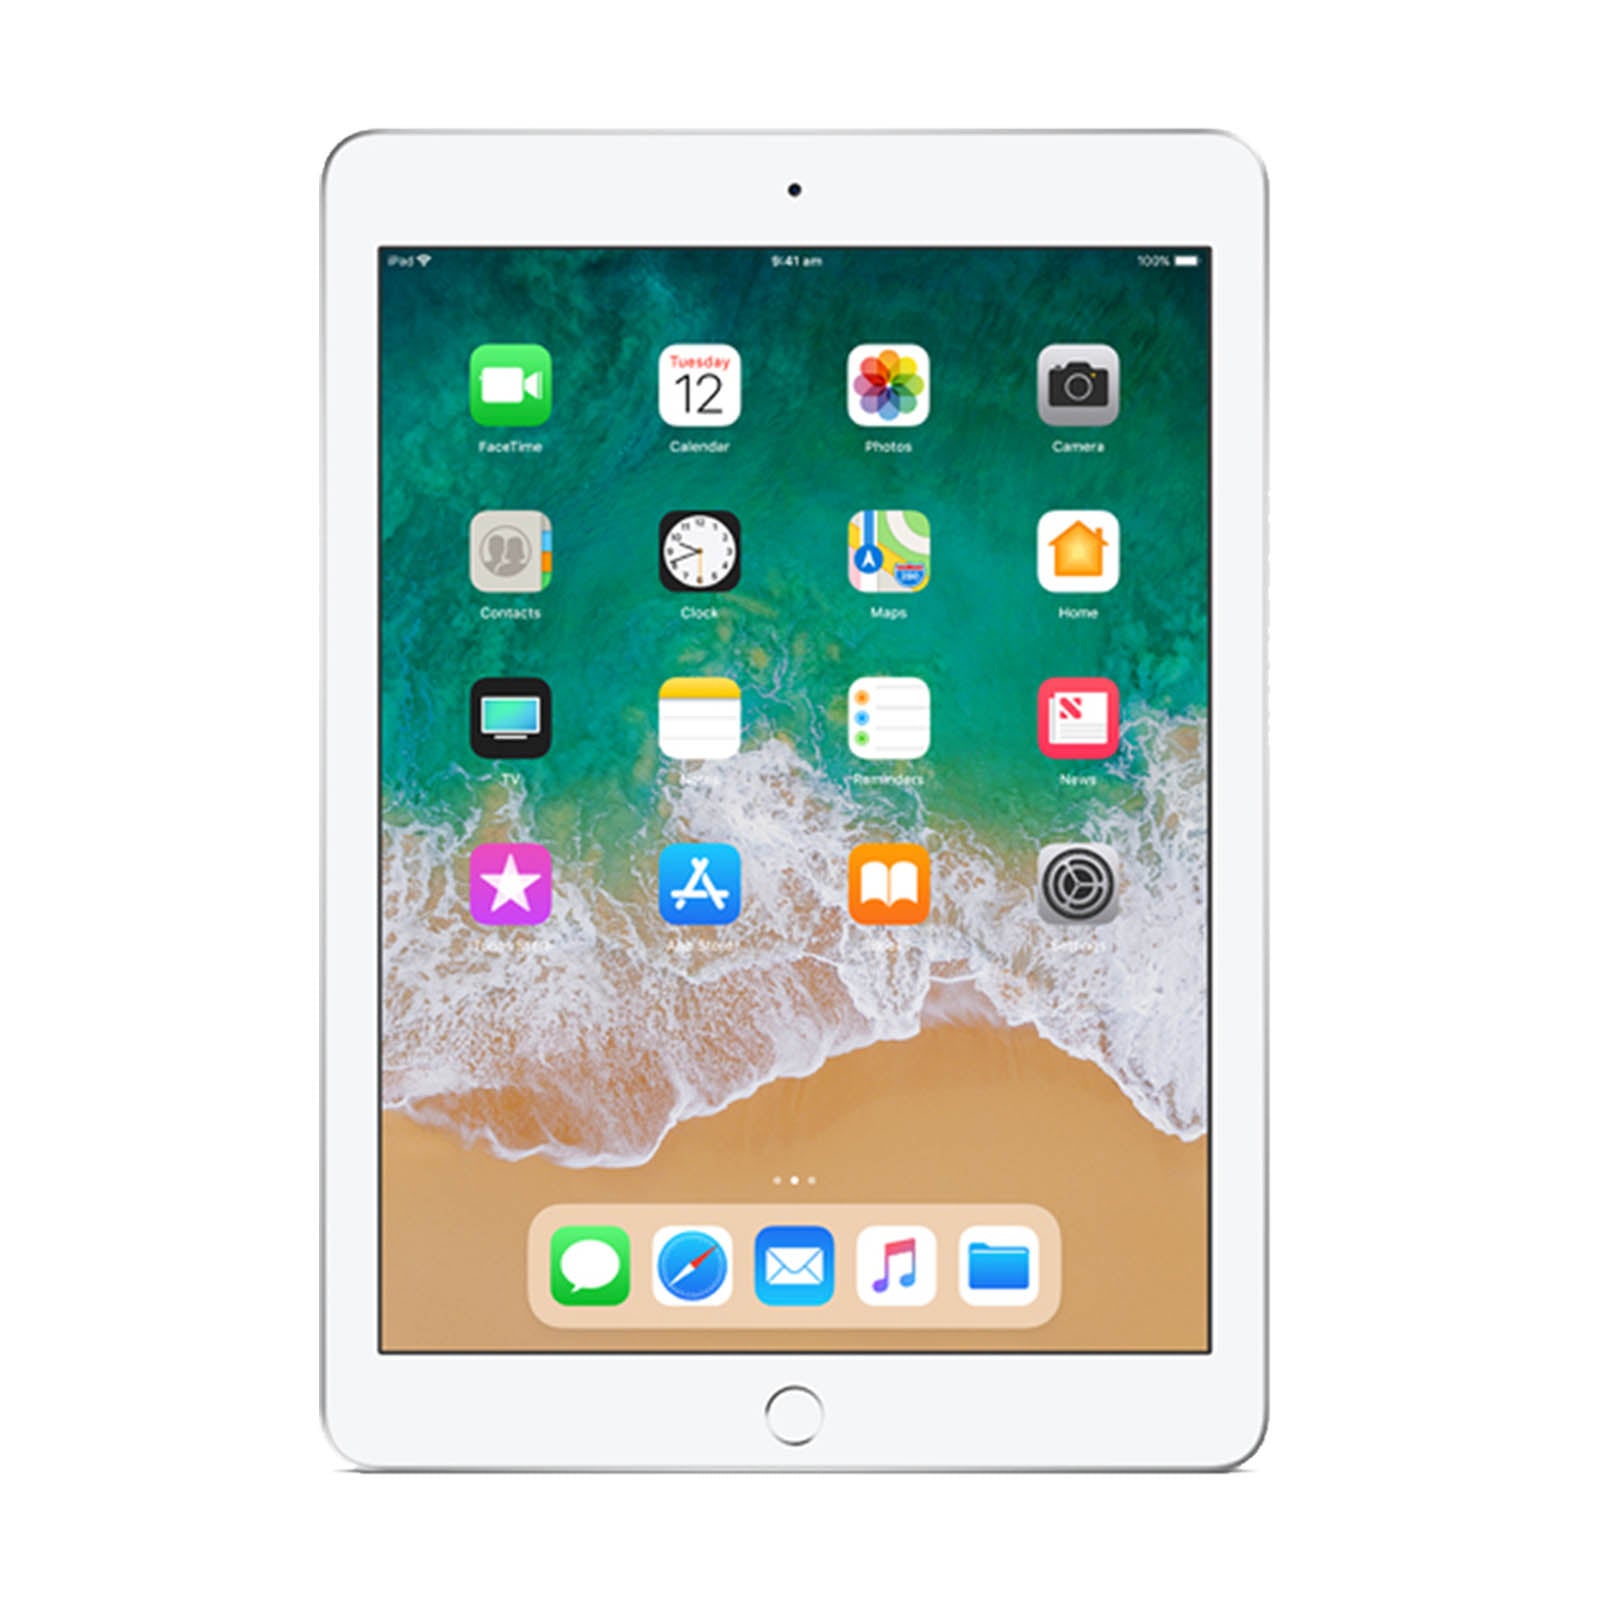 Apple iPad 5 128GB WiFi Silver - Good